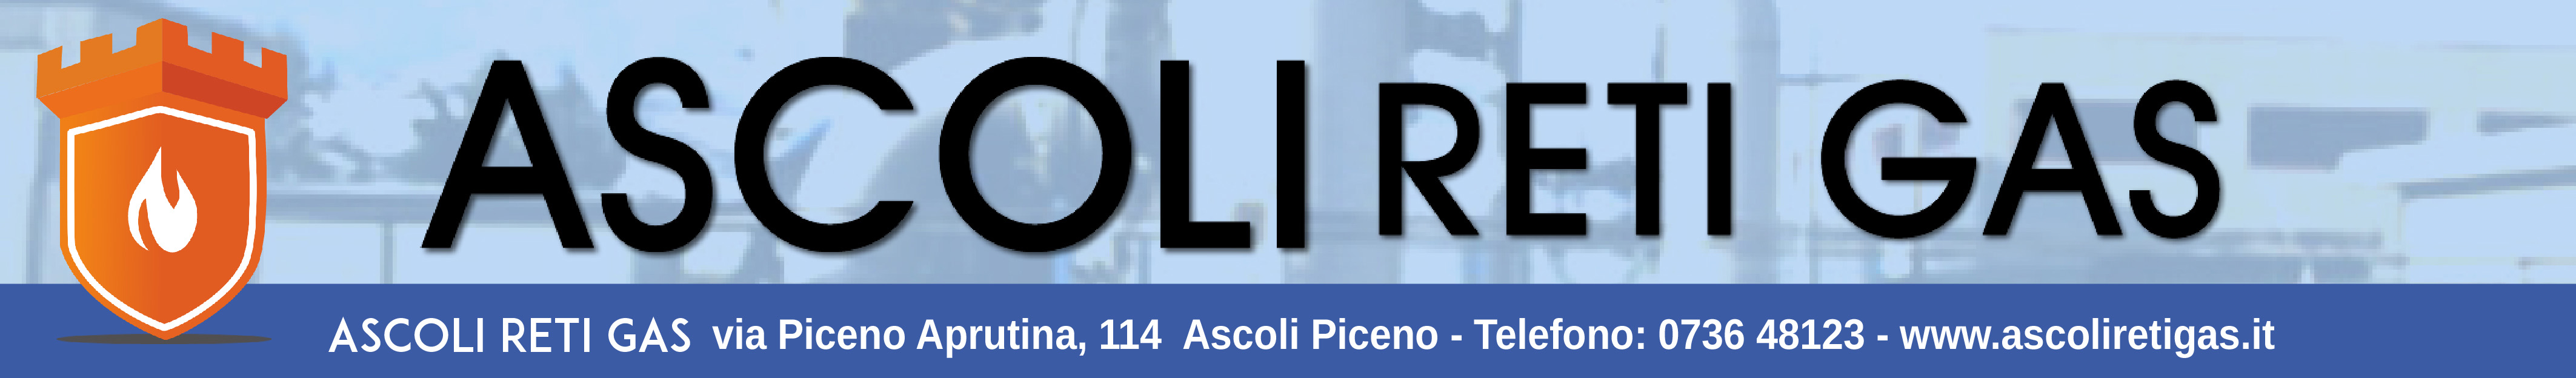 Ascoli reti gas banner 1024x150 DEF